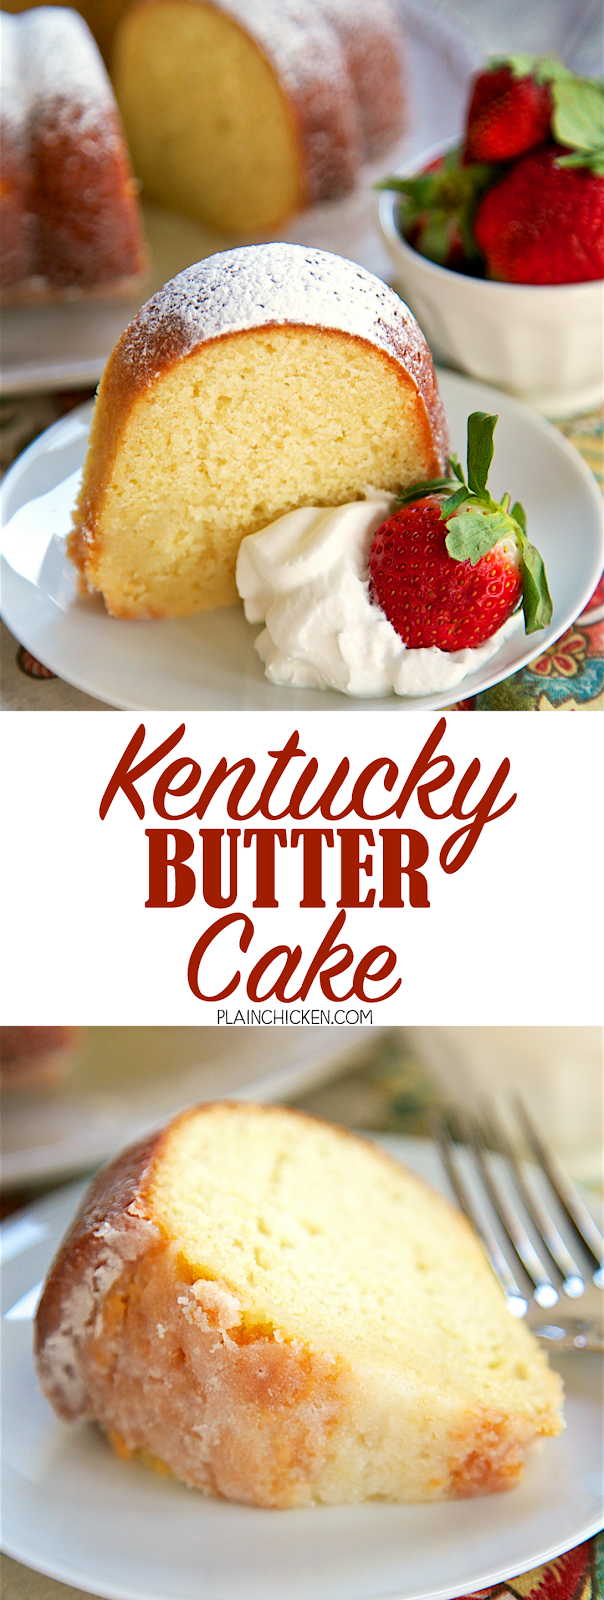 Kentucky Butter Cake | Plain Chicken®